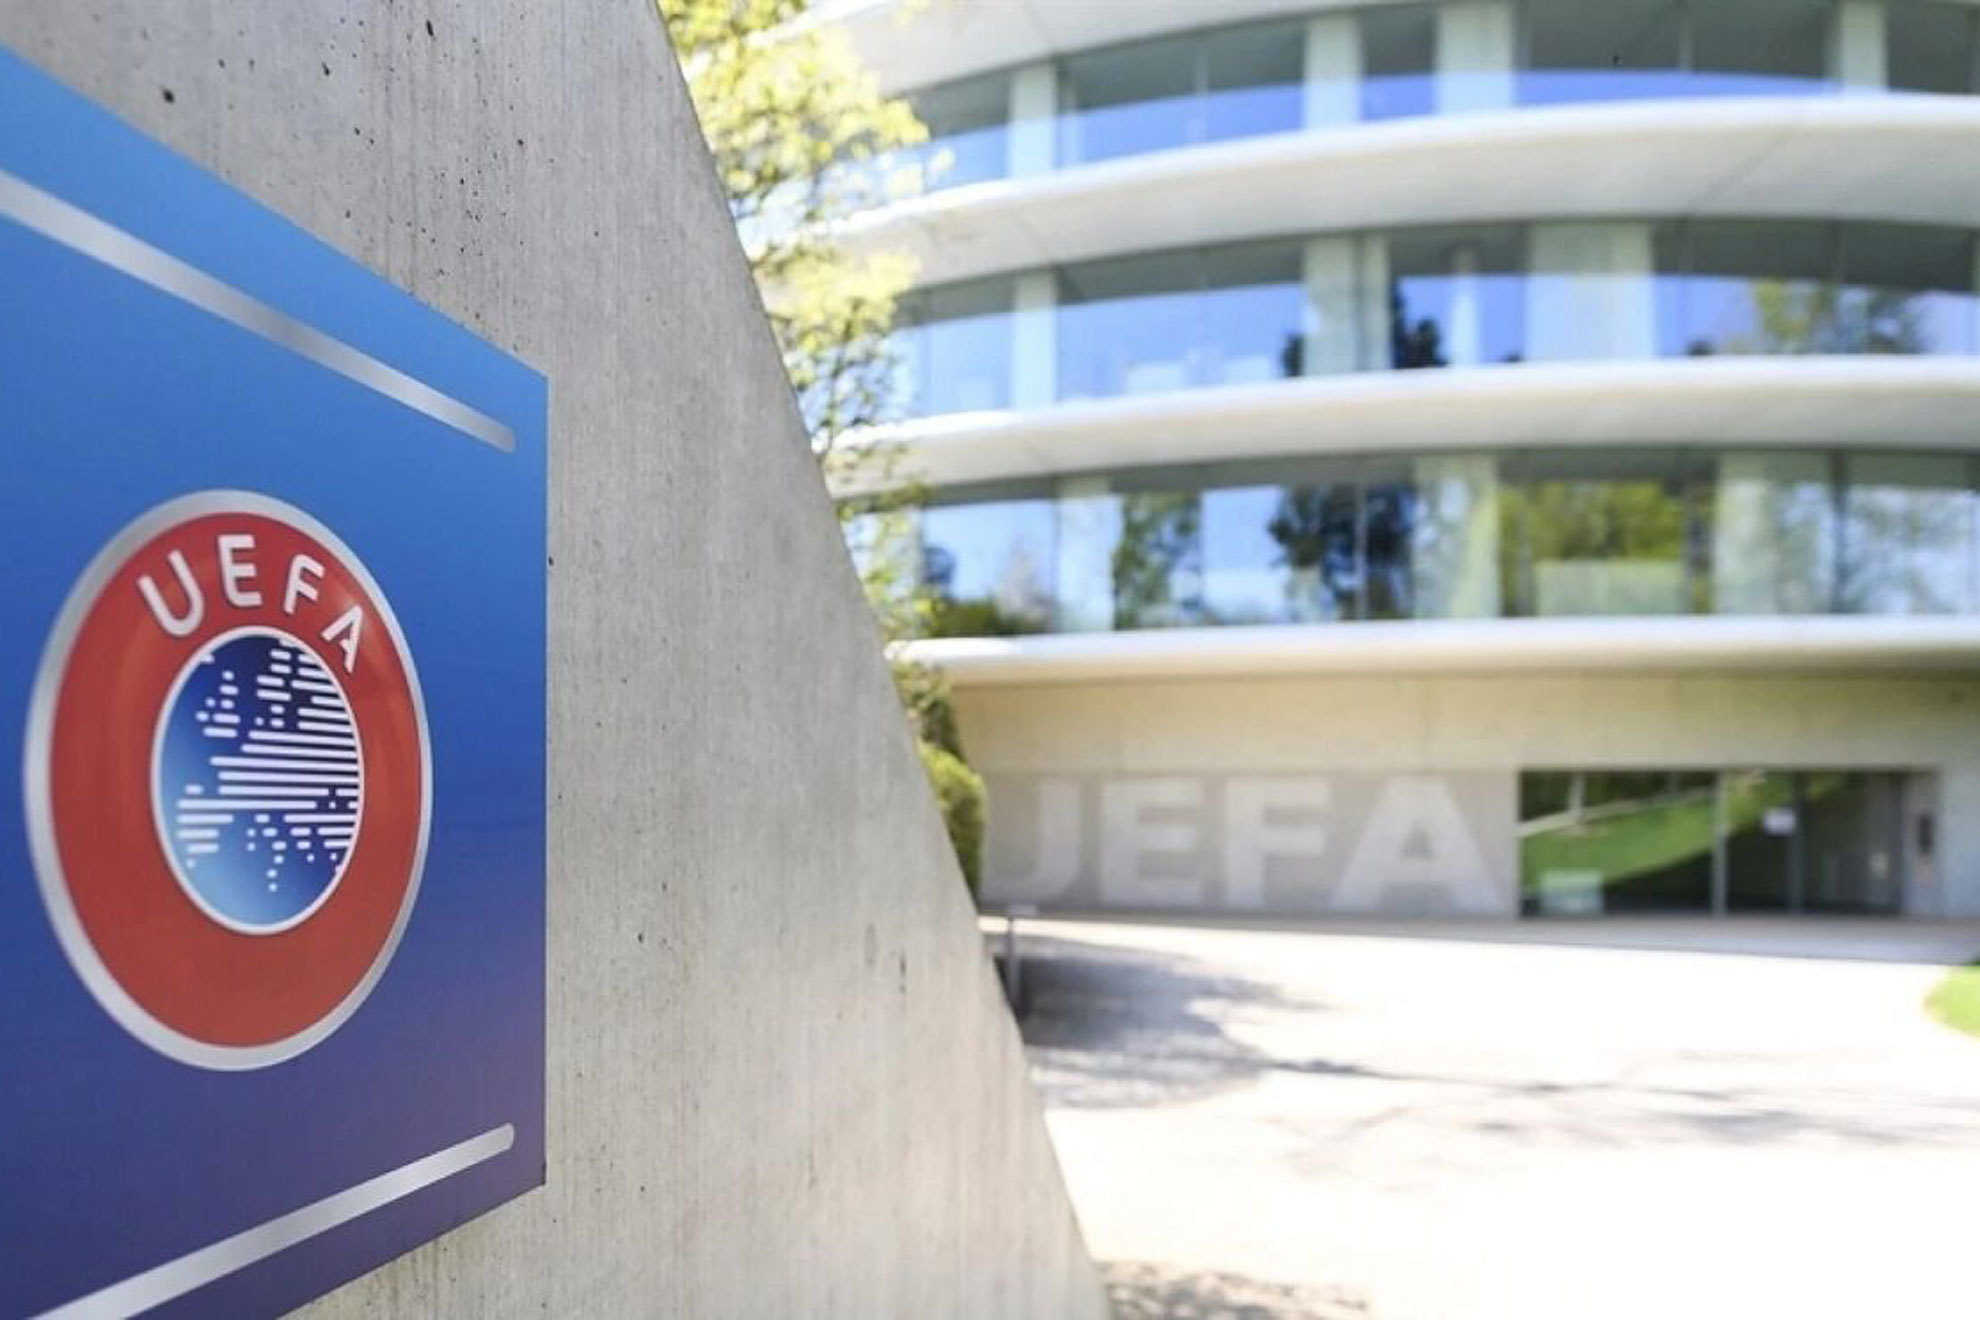 Oficial: la UEFA sanciona a ocho clubes; Bara, Betis y Sevilla se libran